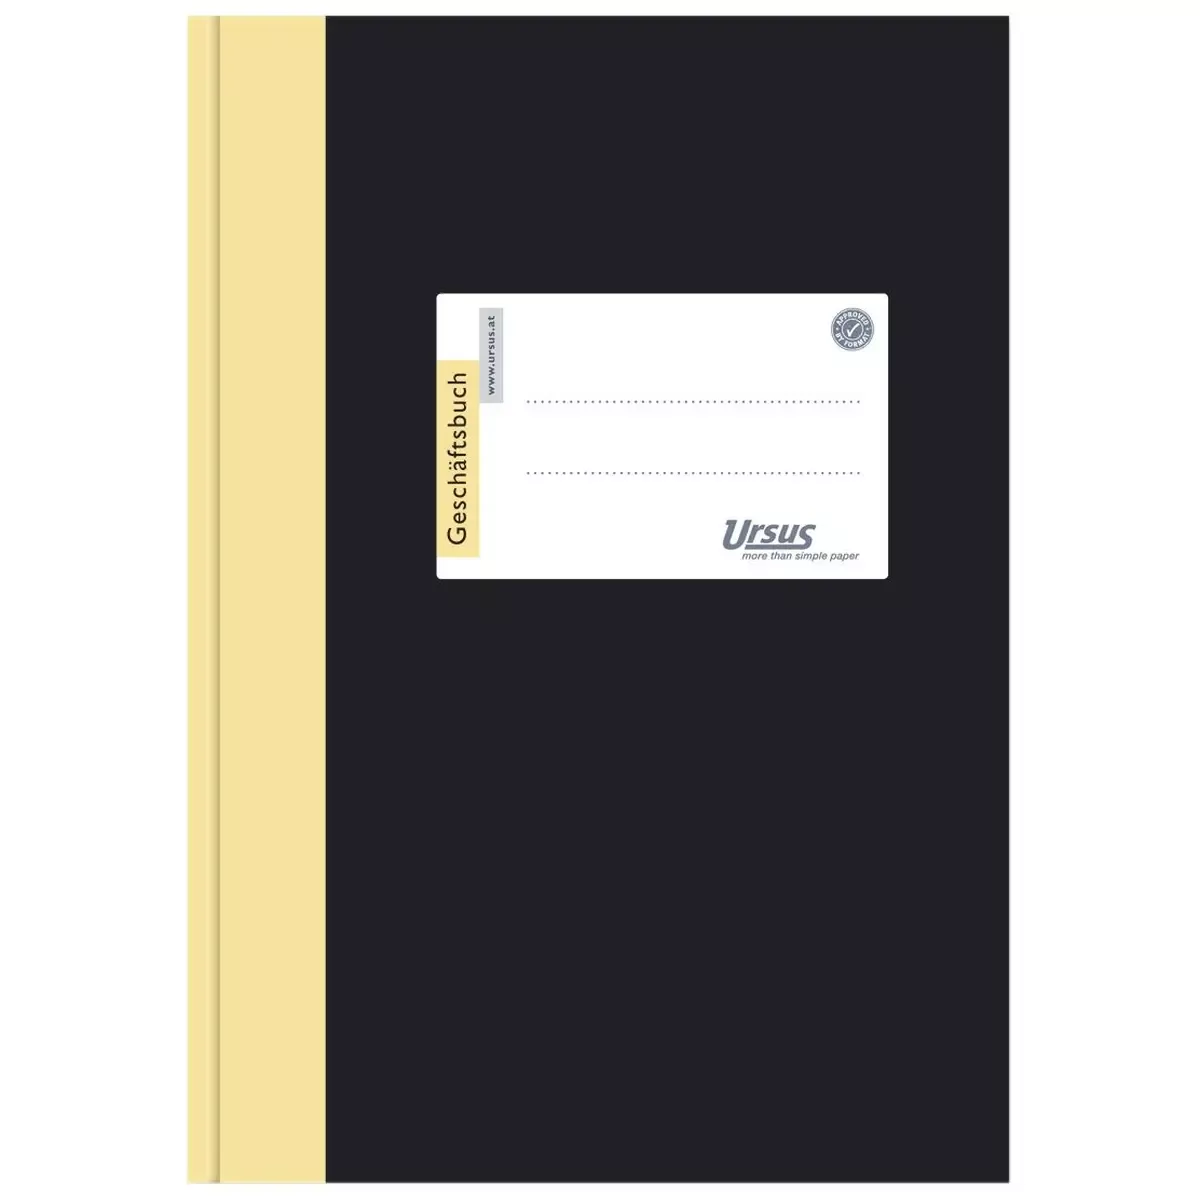 Büromaterial Geschäftsbuch - A4, 144 Blatt, 80g qm, 5 mm kariert für Bürobedarf